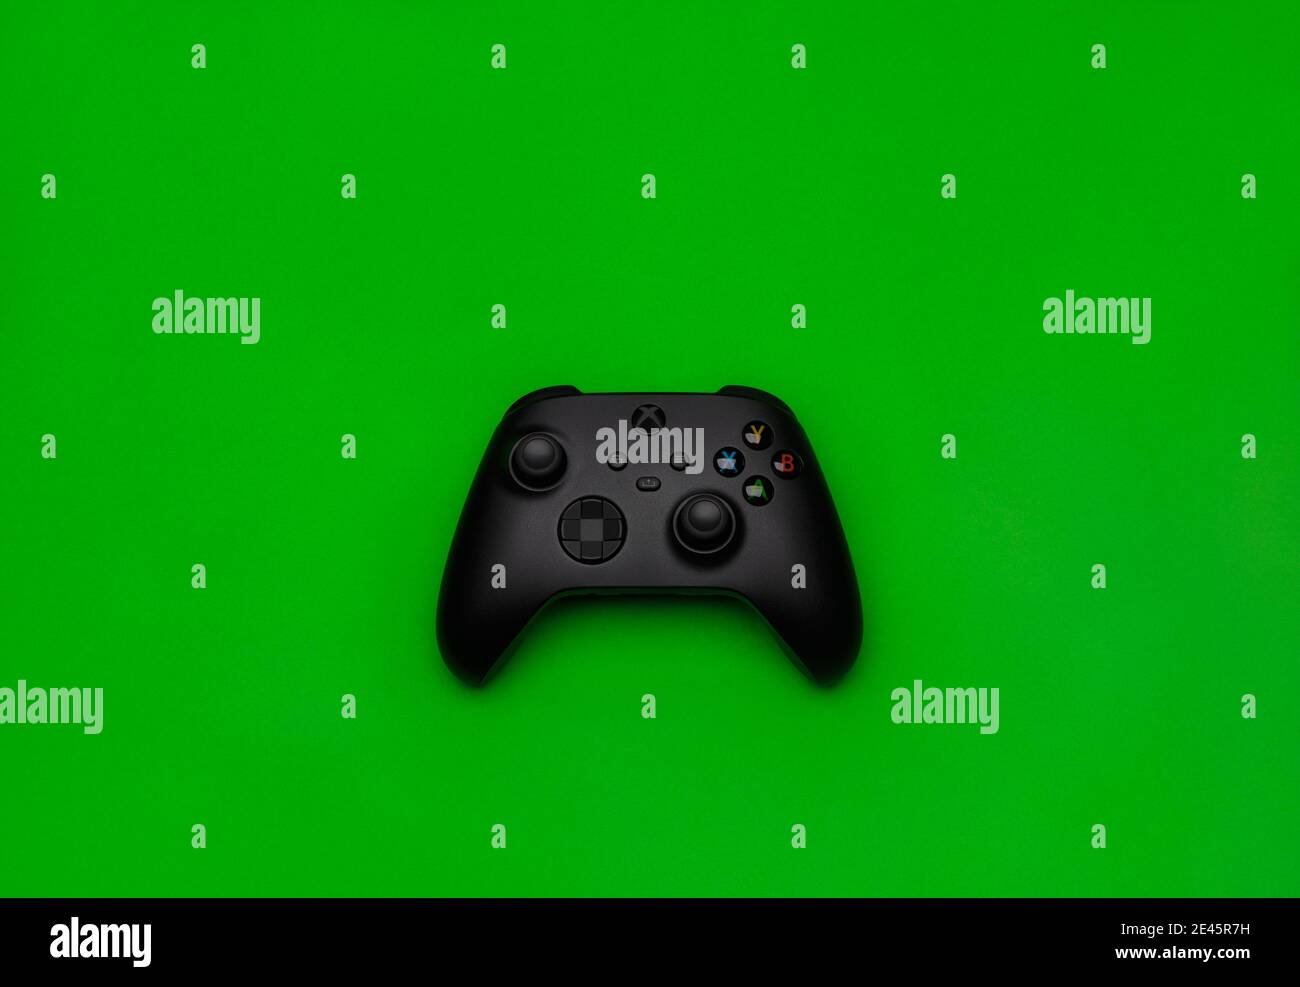 Bộ điều khiển không dây Xbox thật đáng yêu! Sự tiện lợi và dễ dàng điều khiển sẽ khiến bạn yêu nó ngay từ cái nhìn đầu tiên. Hãy truy cập và xem hình ảnh để cùng trải nghiệm nó nhé!